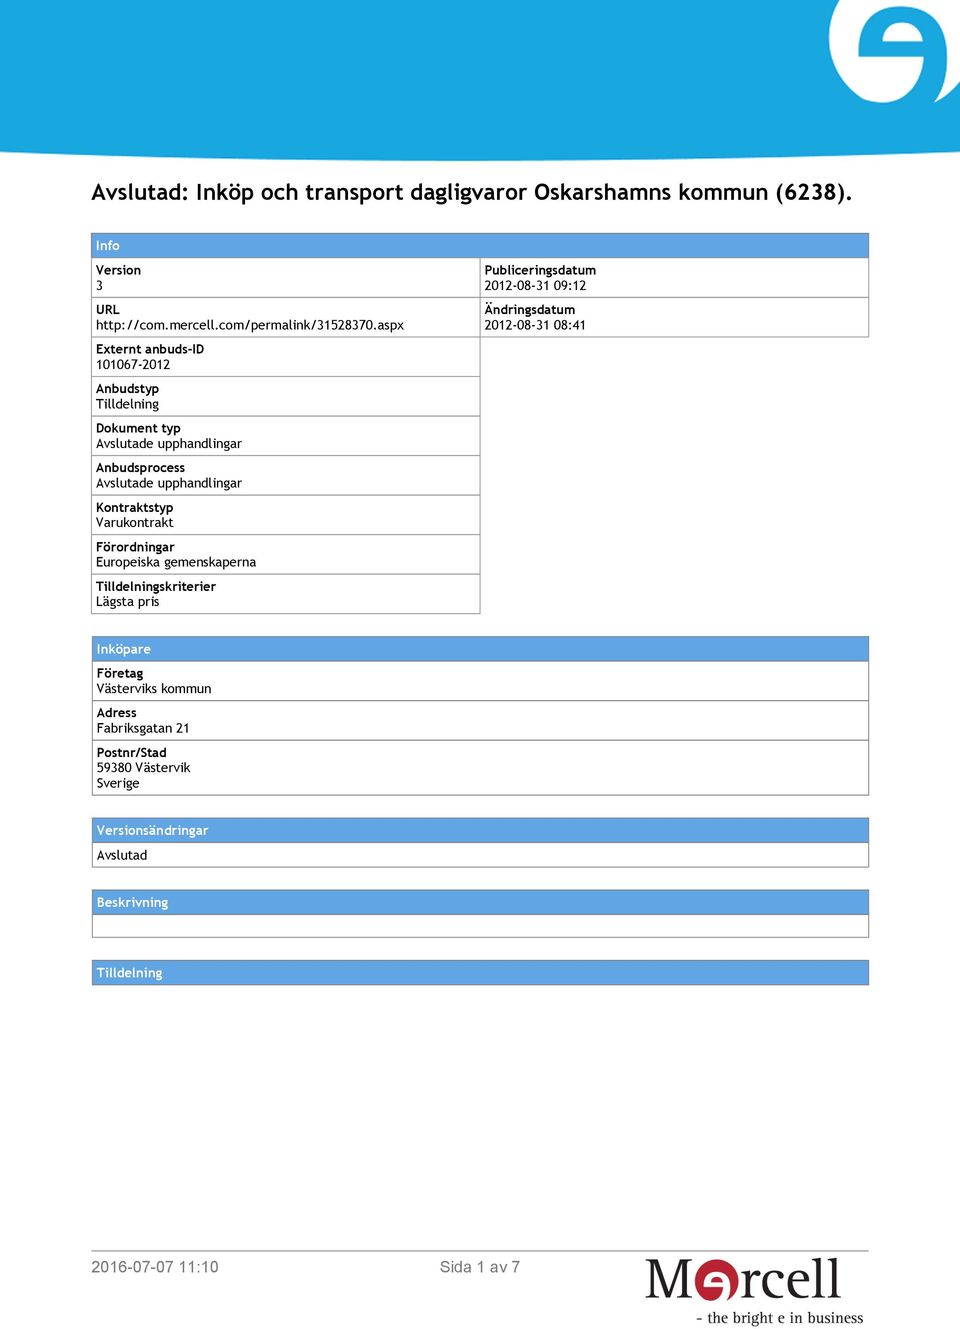 Varukontrakt Förordningar Europeiska gemenskaperna Tilldelningskriterier Lägsta pris Publiceringsdatum 2012-08-31 09:12 Ändringsdatum 2012-08-31